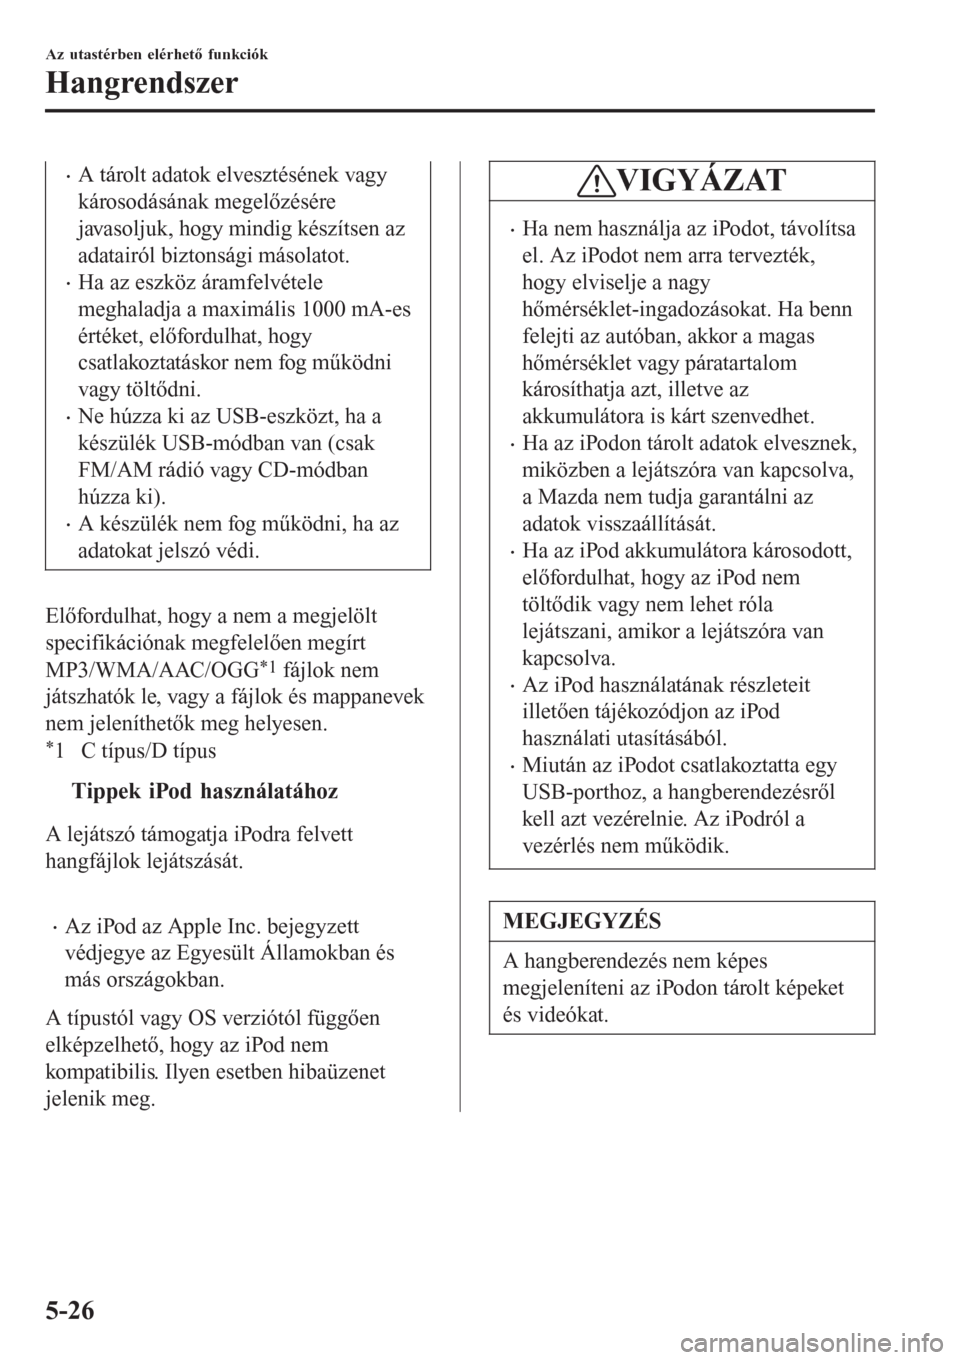 MAZDA MODEL CX-3 2015  Kezelési útmutató (in Hungarian) •A tárolt adatok elvesztésének vagy
károsodásának megelőzésére
javasoljuk, hogy mindig készítsen az
adatairól biztonsági másolatot.
•Ha az eszköz áramfelvétele
meghaladja a maxim�